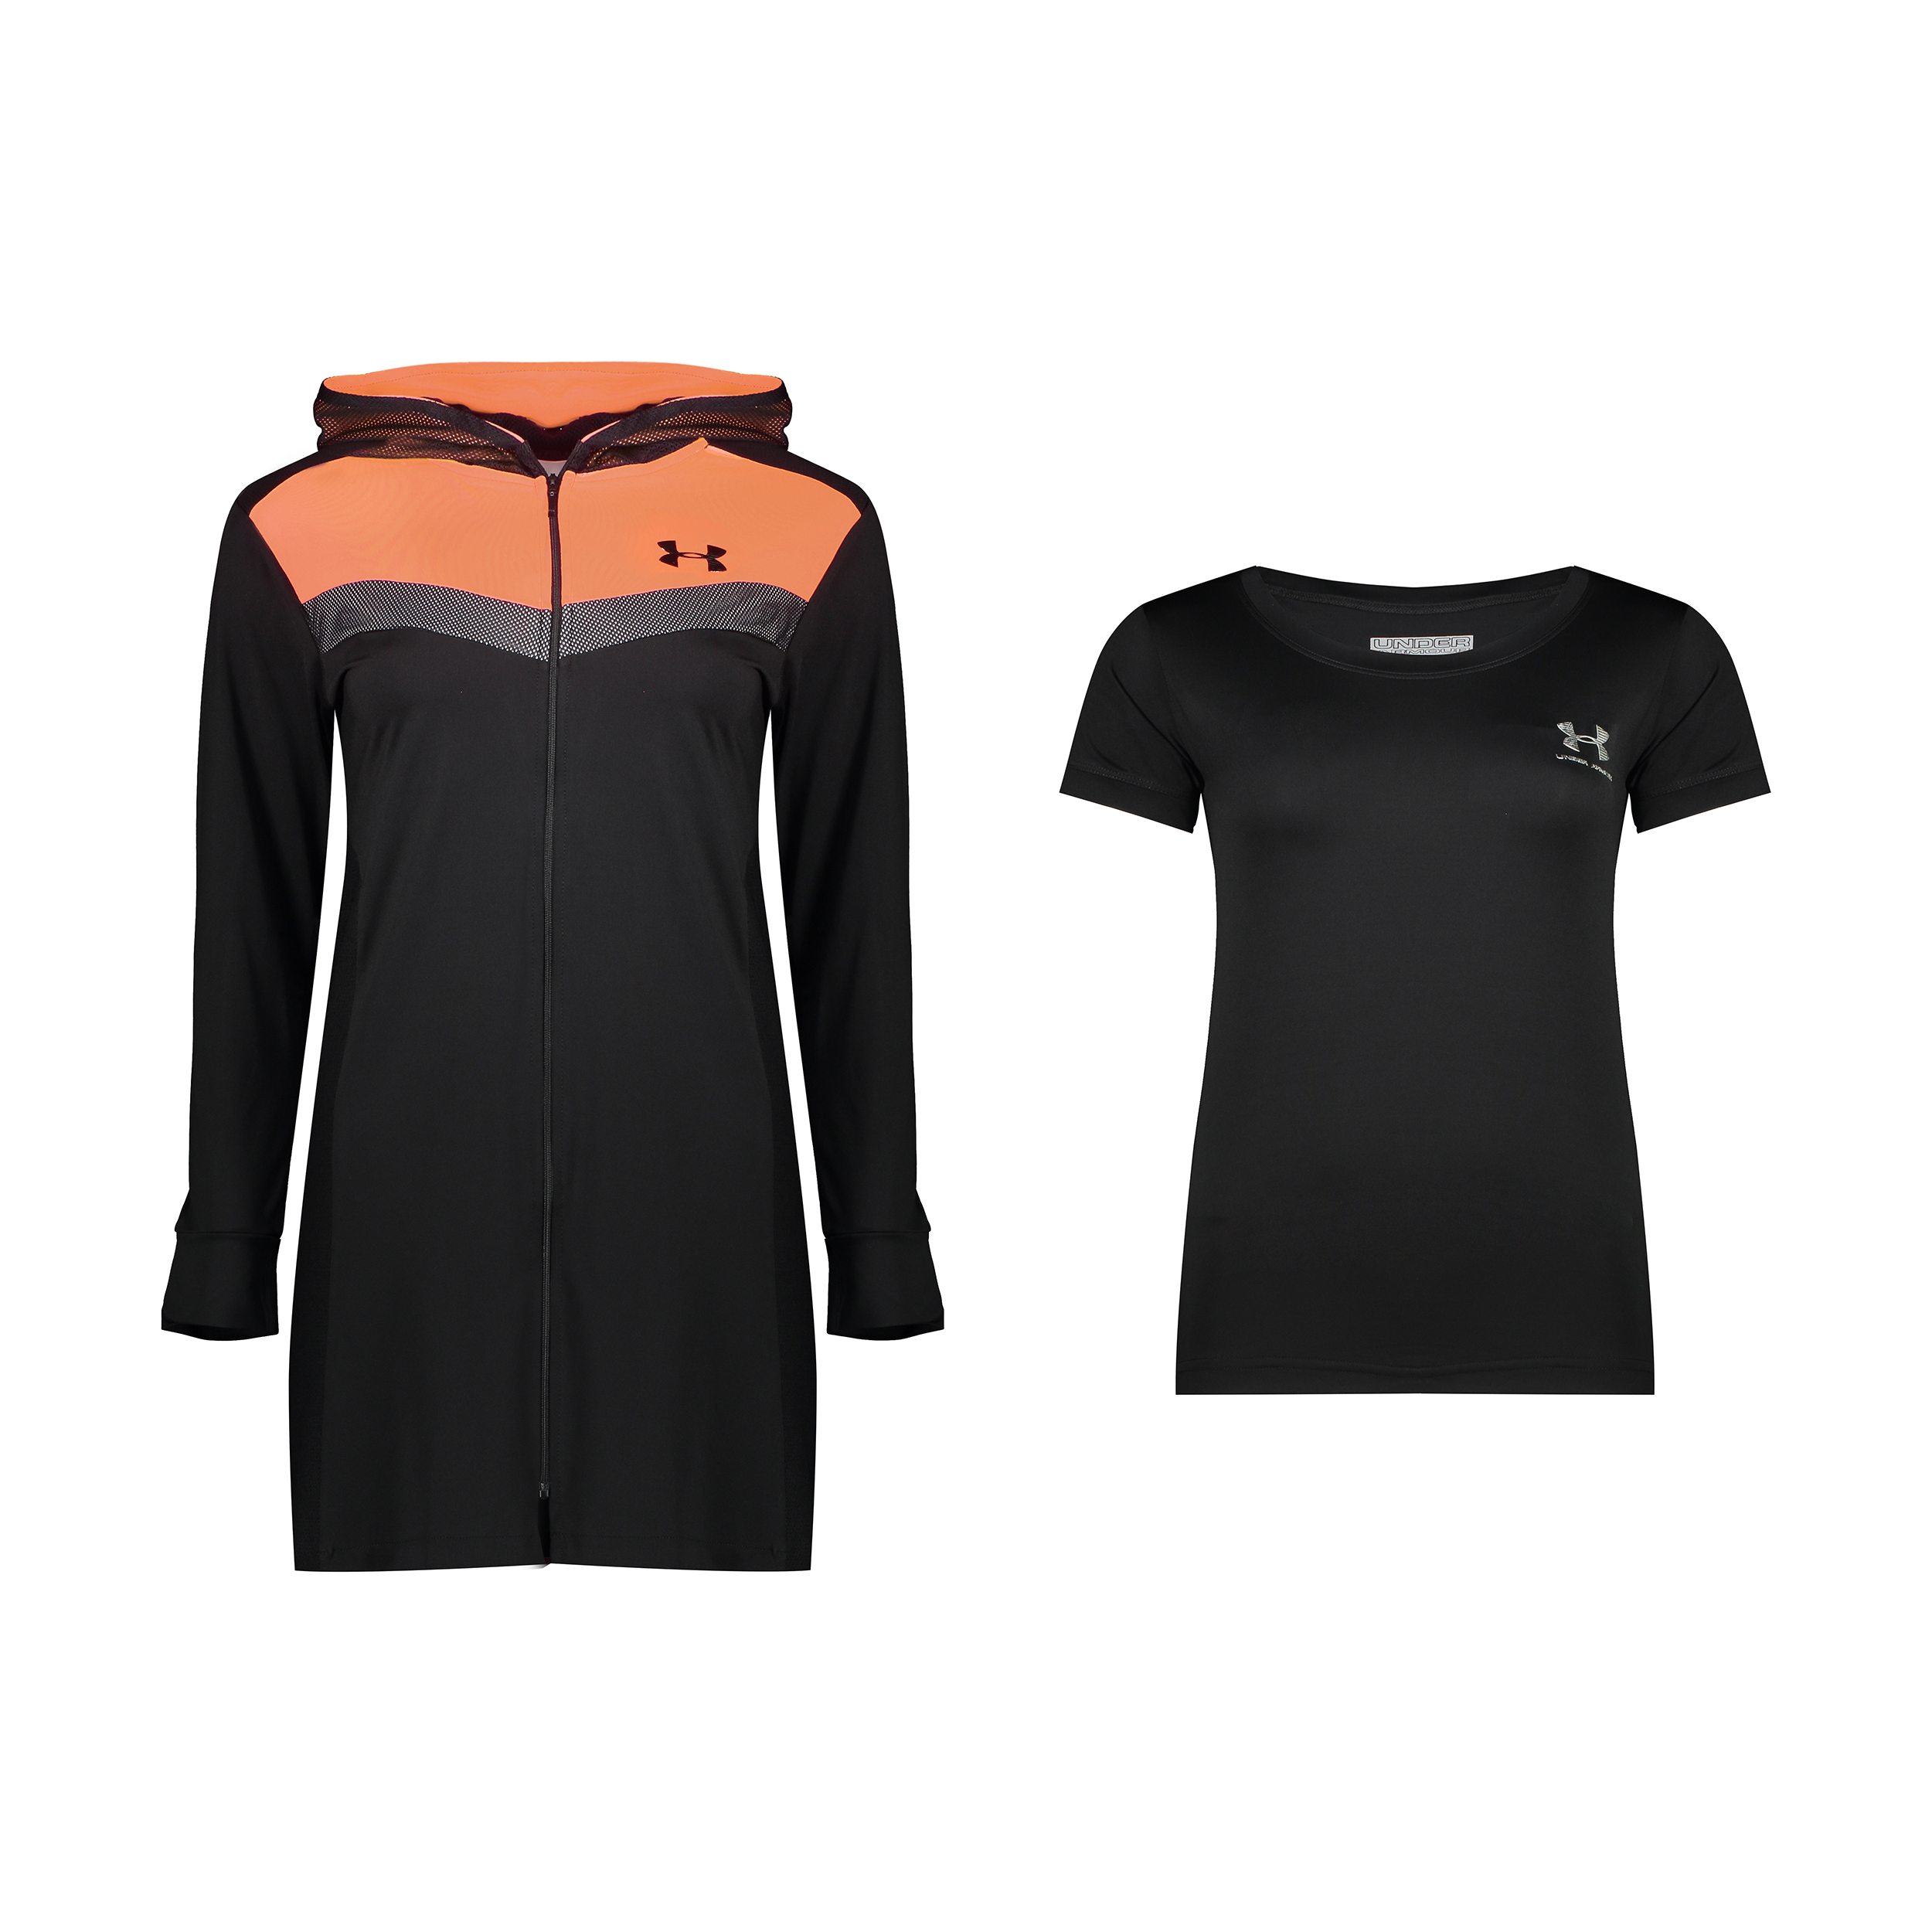 ست گرمکن و تی شرت ورزشی زنانه آندر آرمور کد TH4-0887